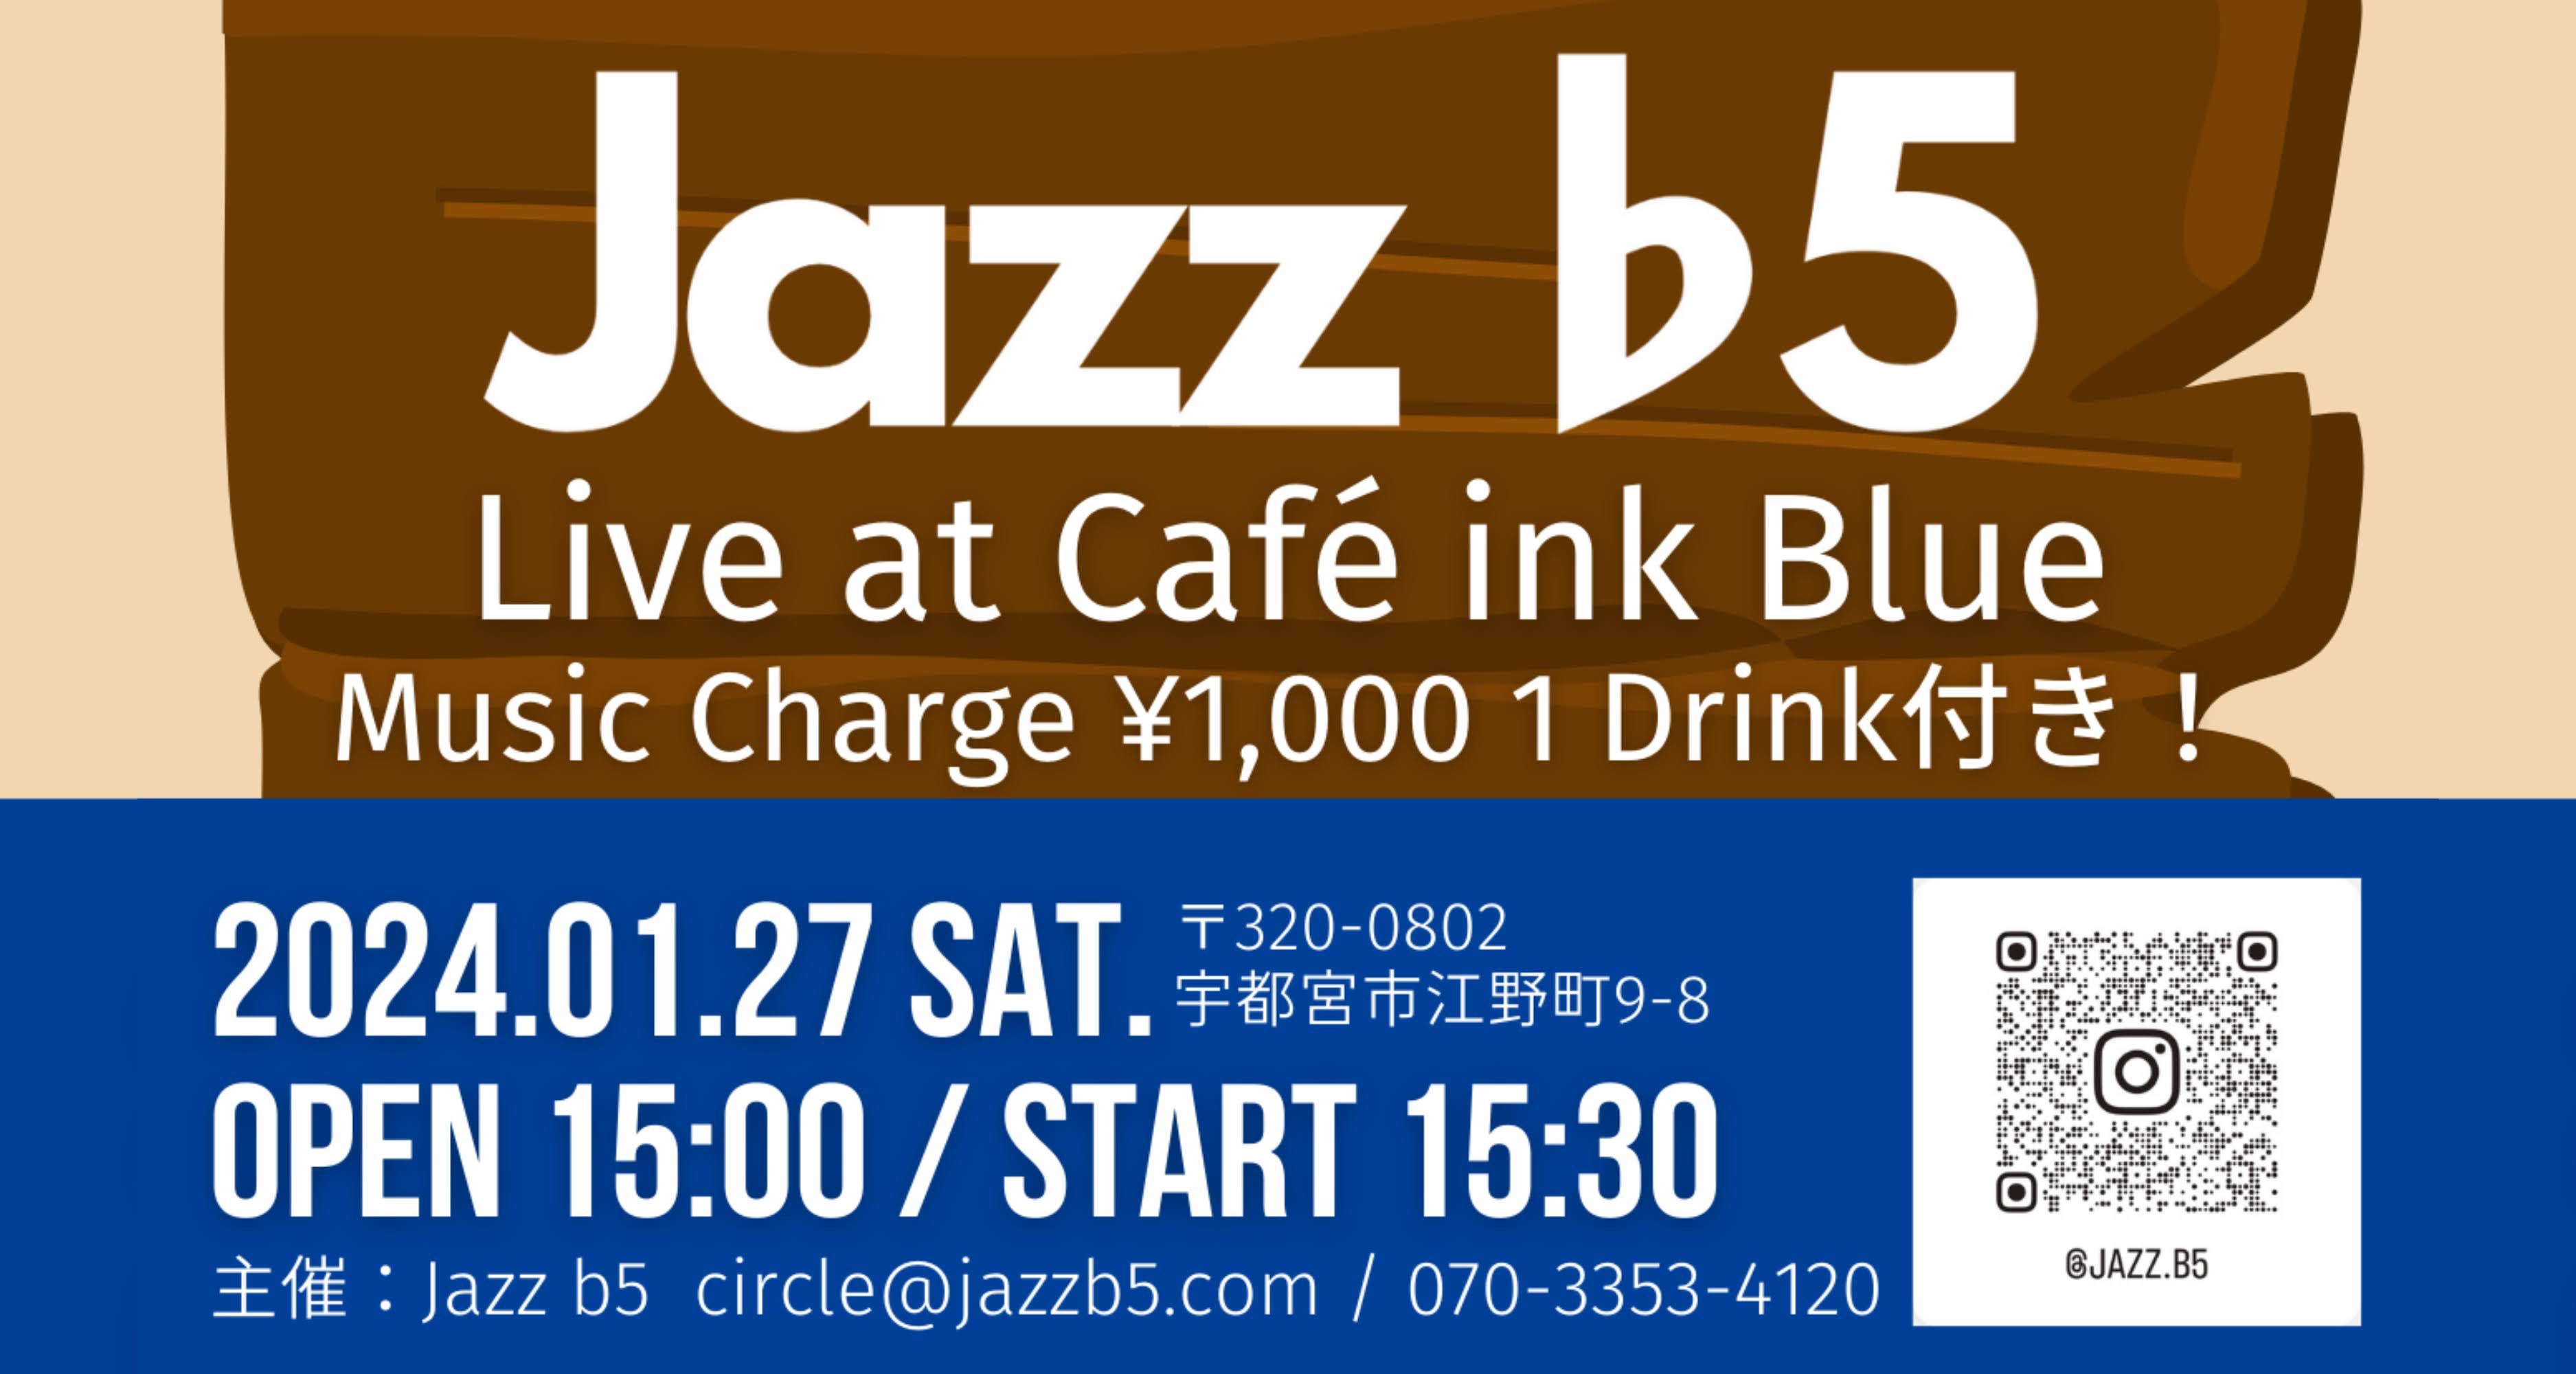 01.27 Sat. Live at Café ink Blue